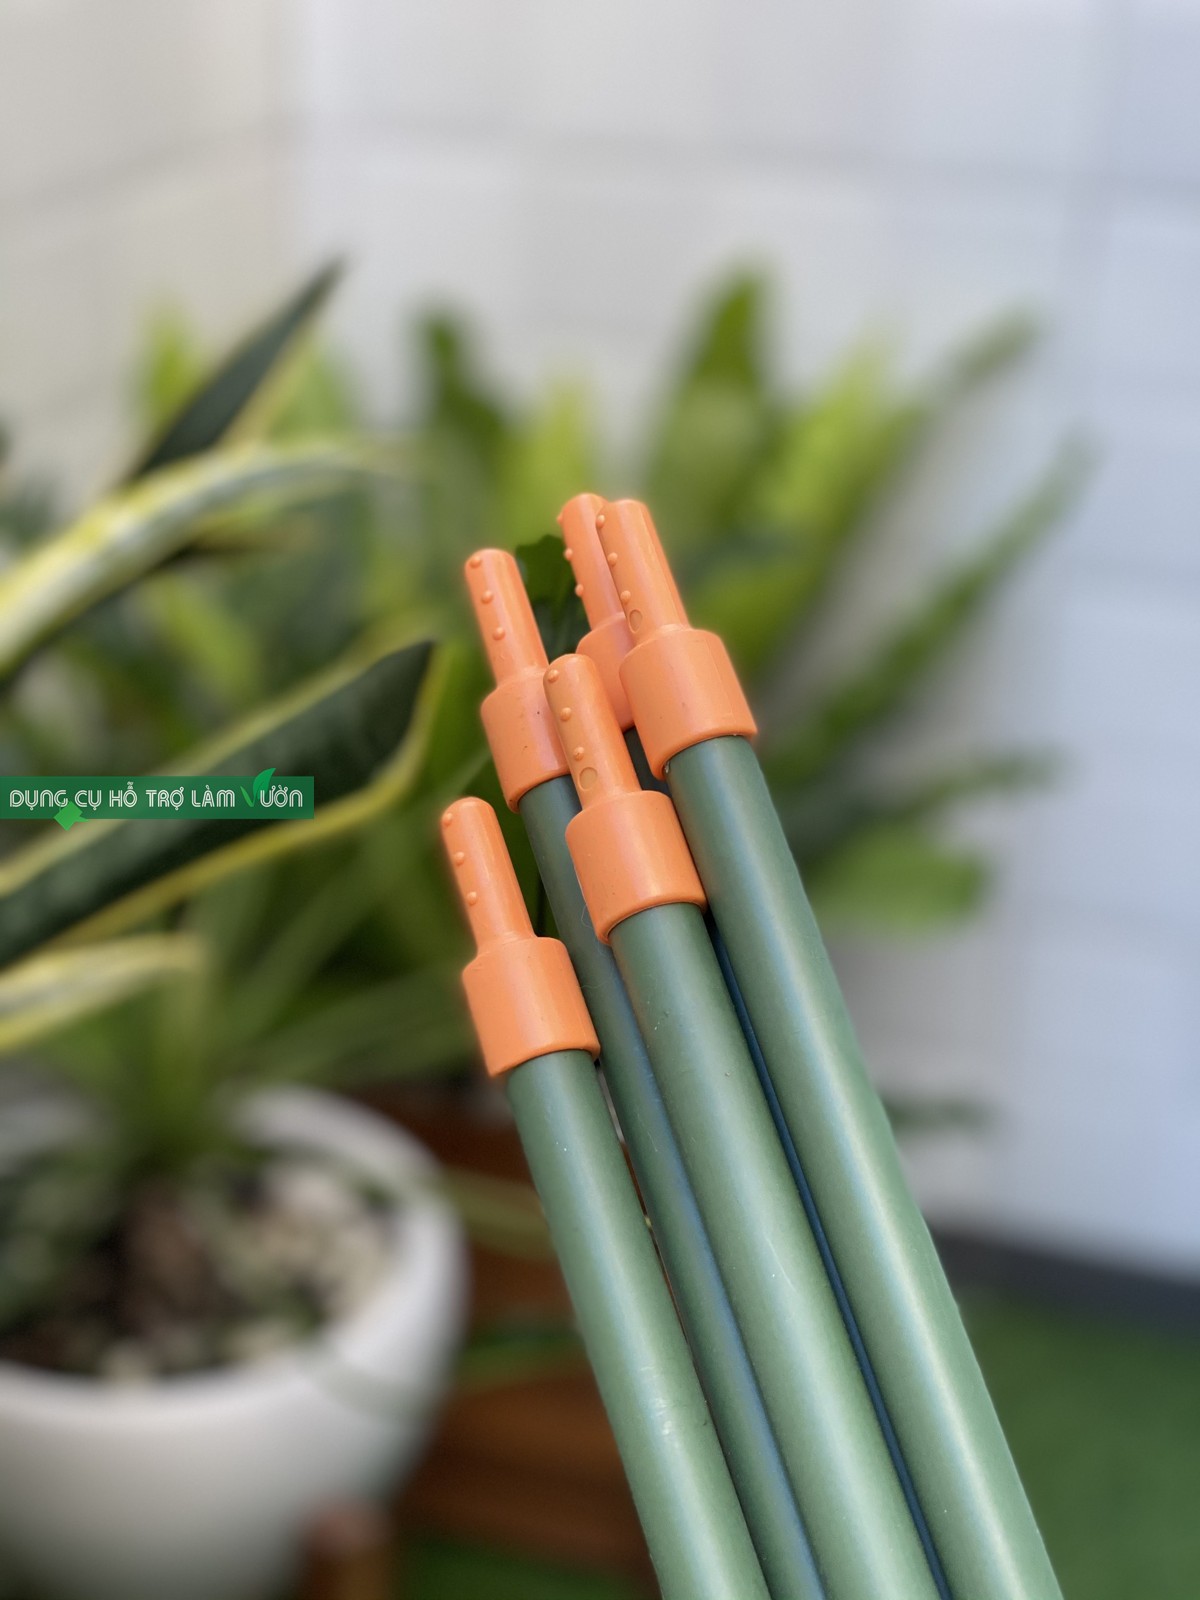 5 ống thép bọc nhựa phi 16 dài 180cm có đầu nối màu cam nối dài ống với nhau